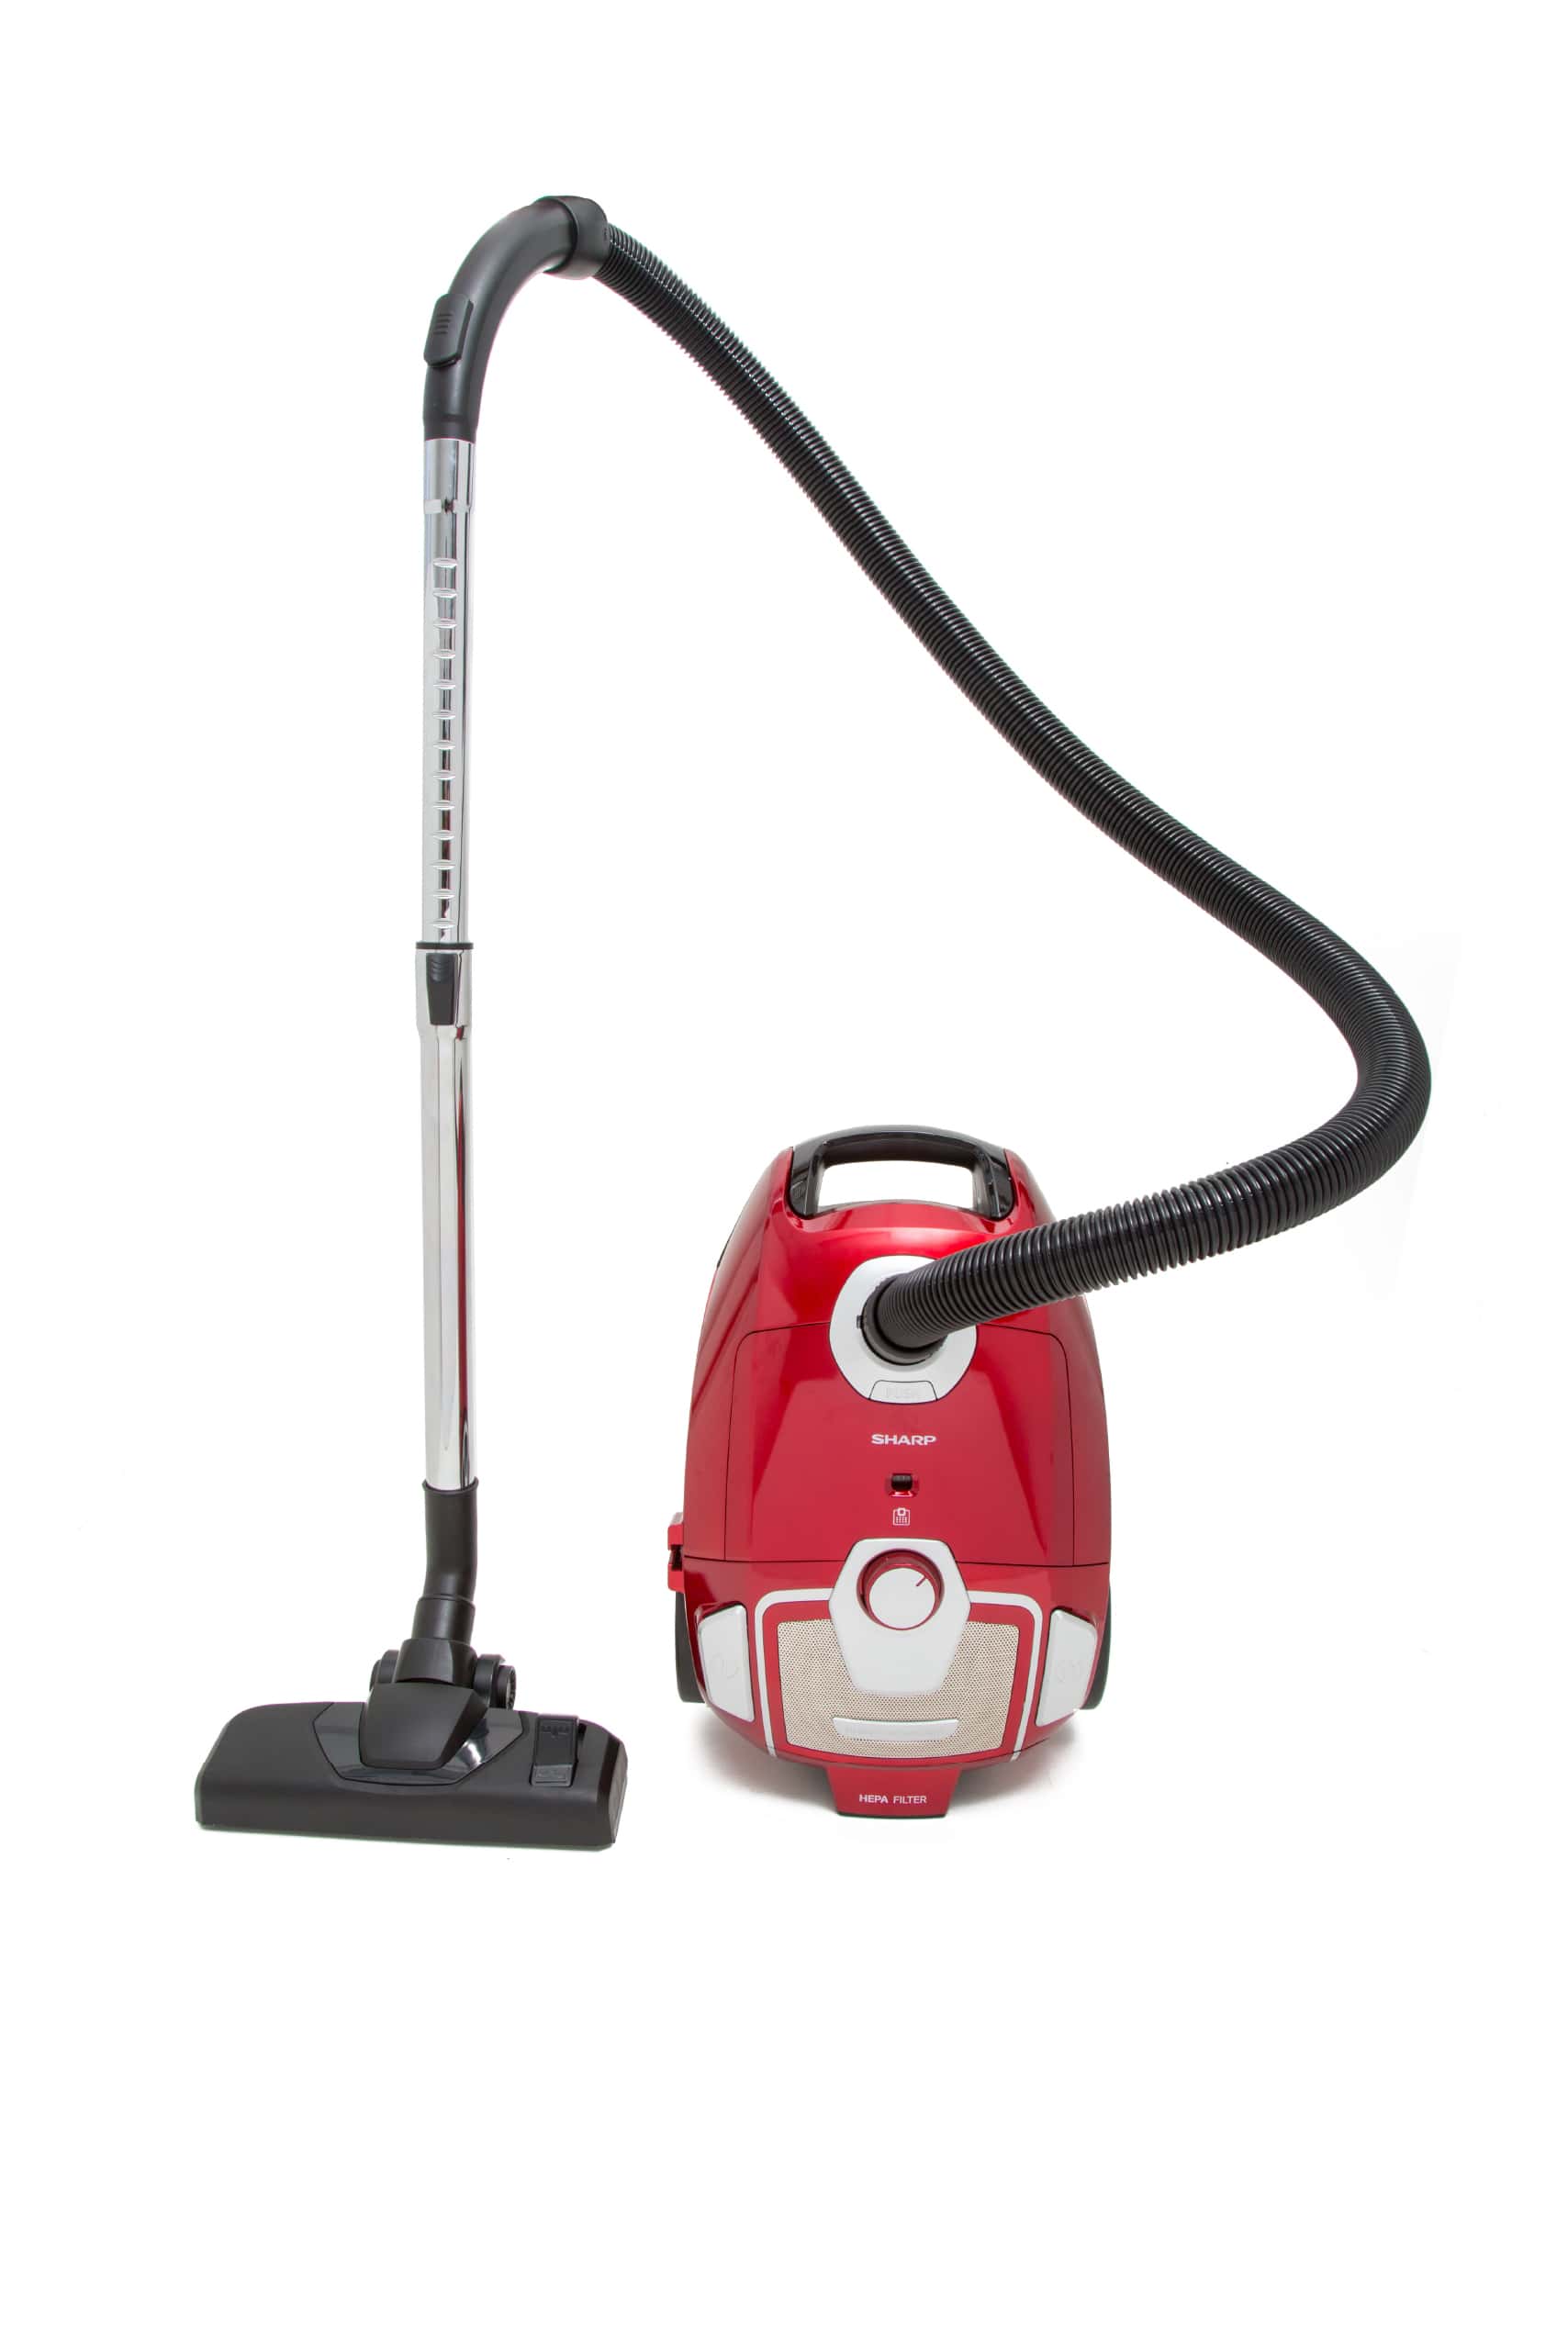 Sharp bag vacuum cleaner 2000 watts - red